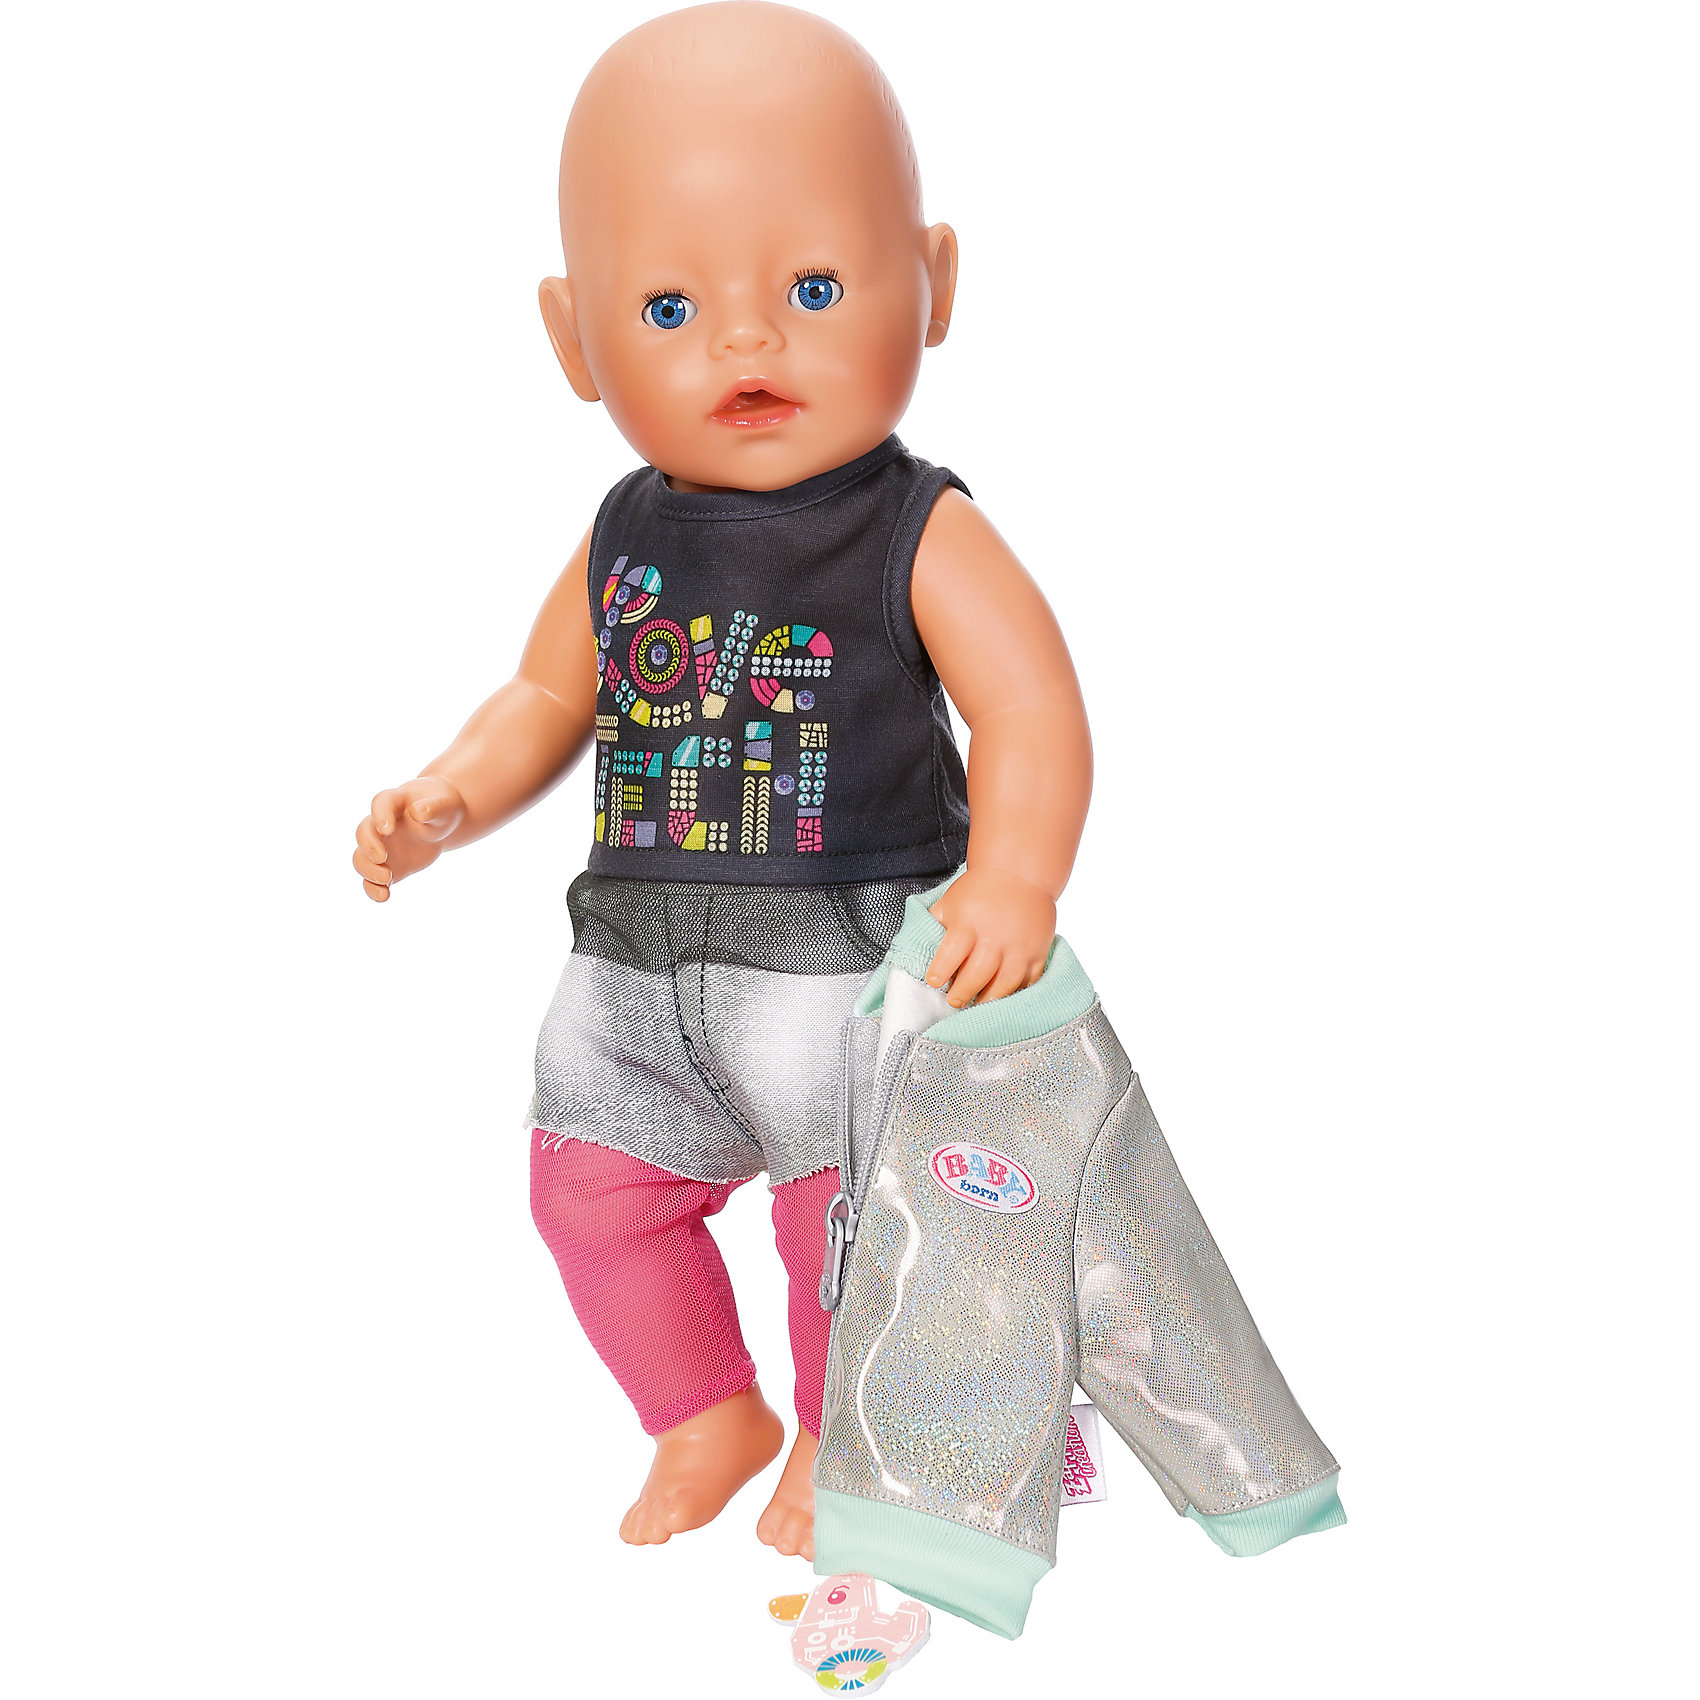 Детского беби бона. Одежда Zapf Creation Baby born. Кукла Беби Борн 43см. Одежда для кукол Zapf Creation Baby born. Одежда для Беби Борн 43 см.